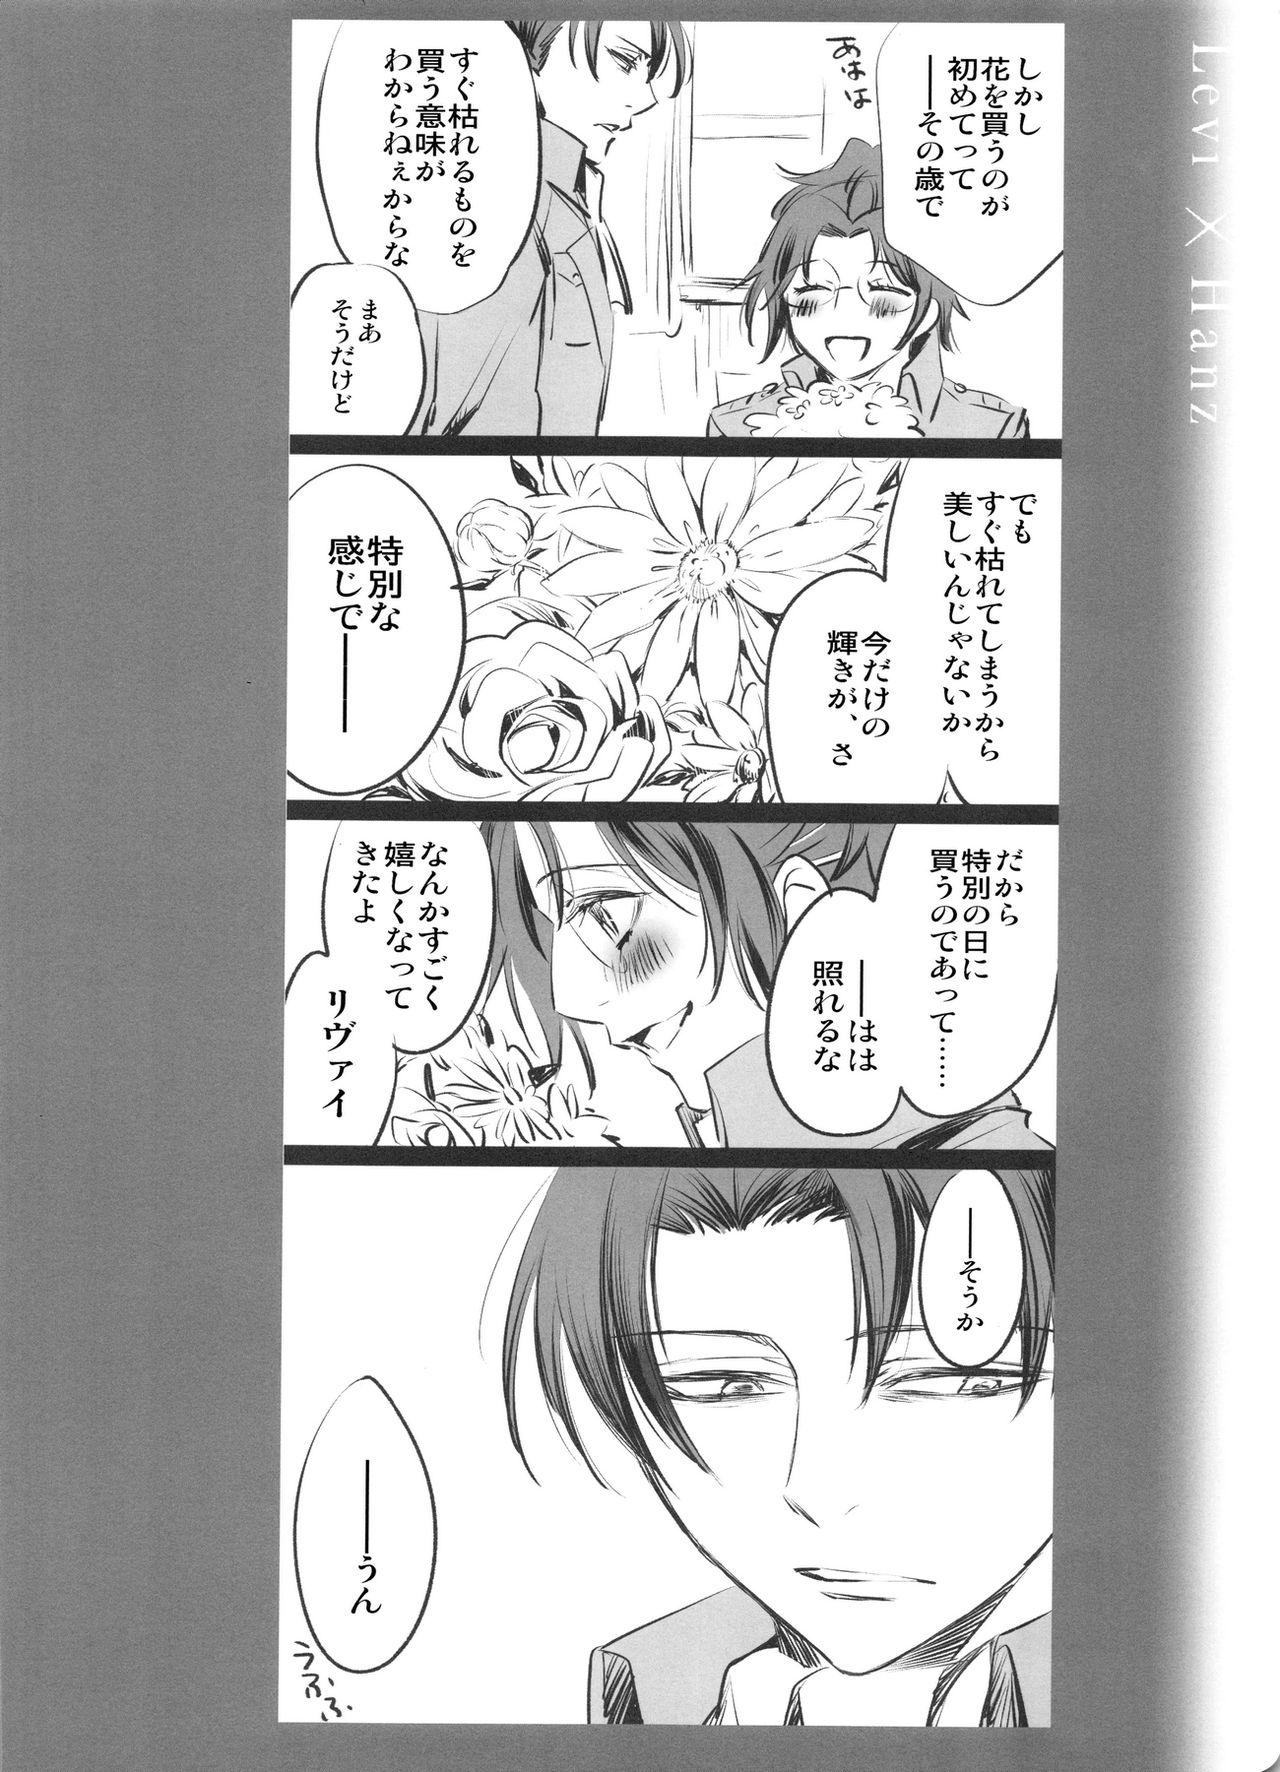 Soapy 0905 - Shingeki no kyojin Masturbating - Page 10